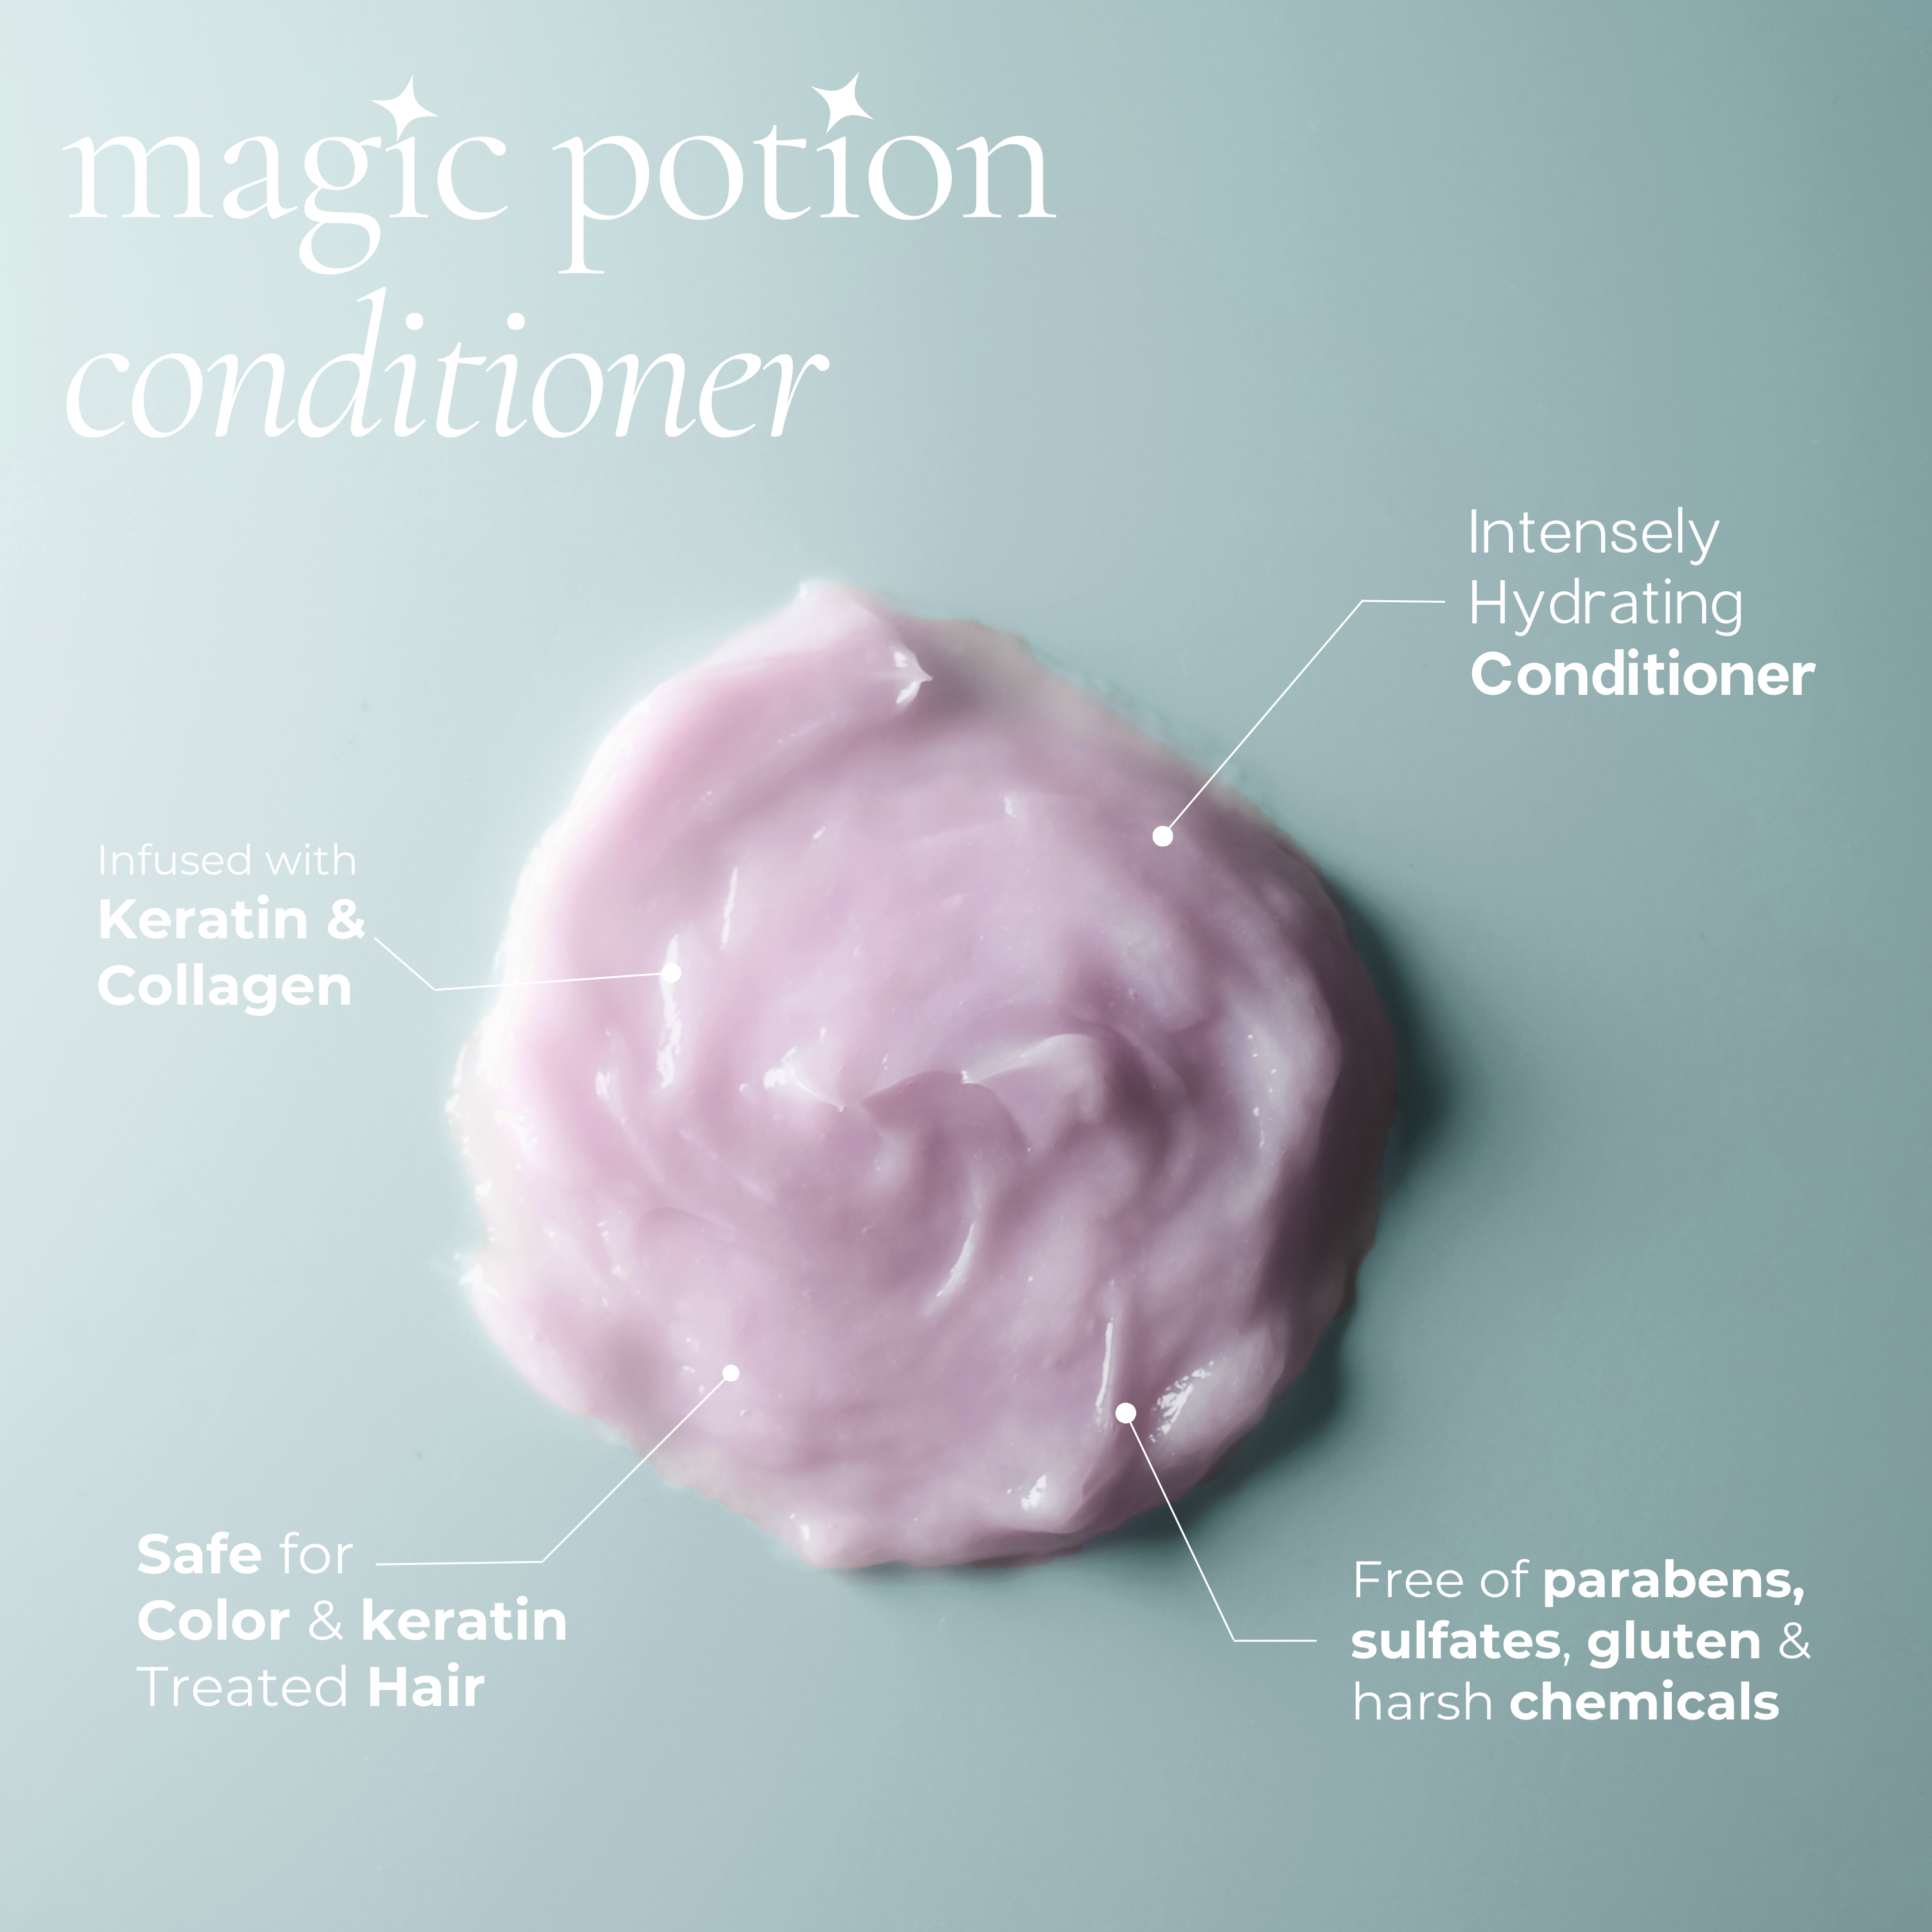 Magic Potion Conditioner